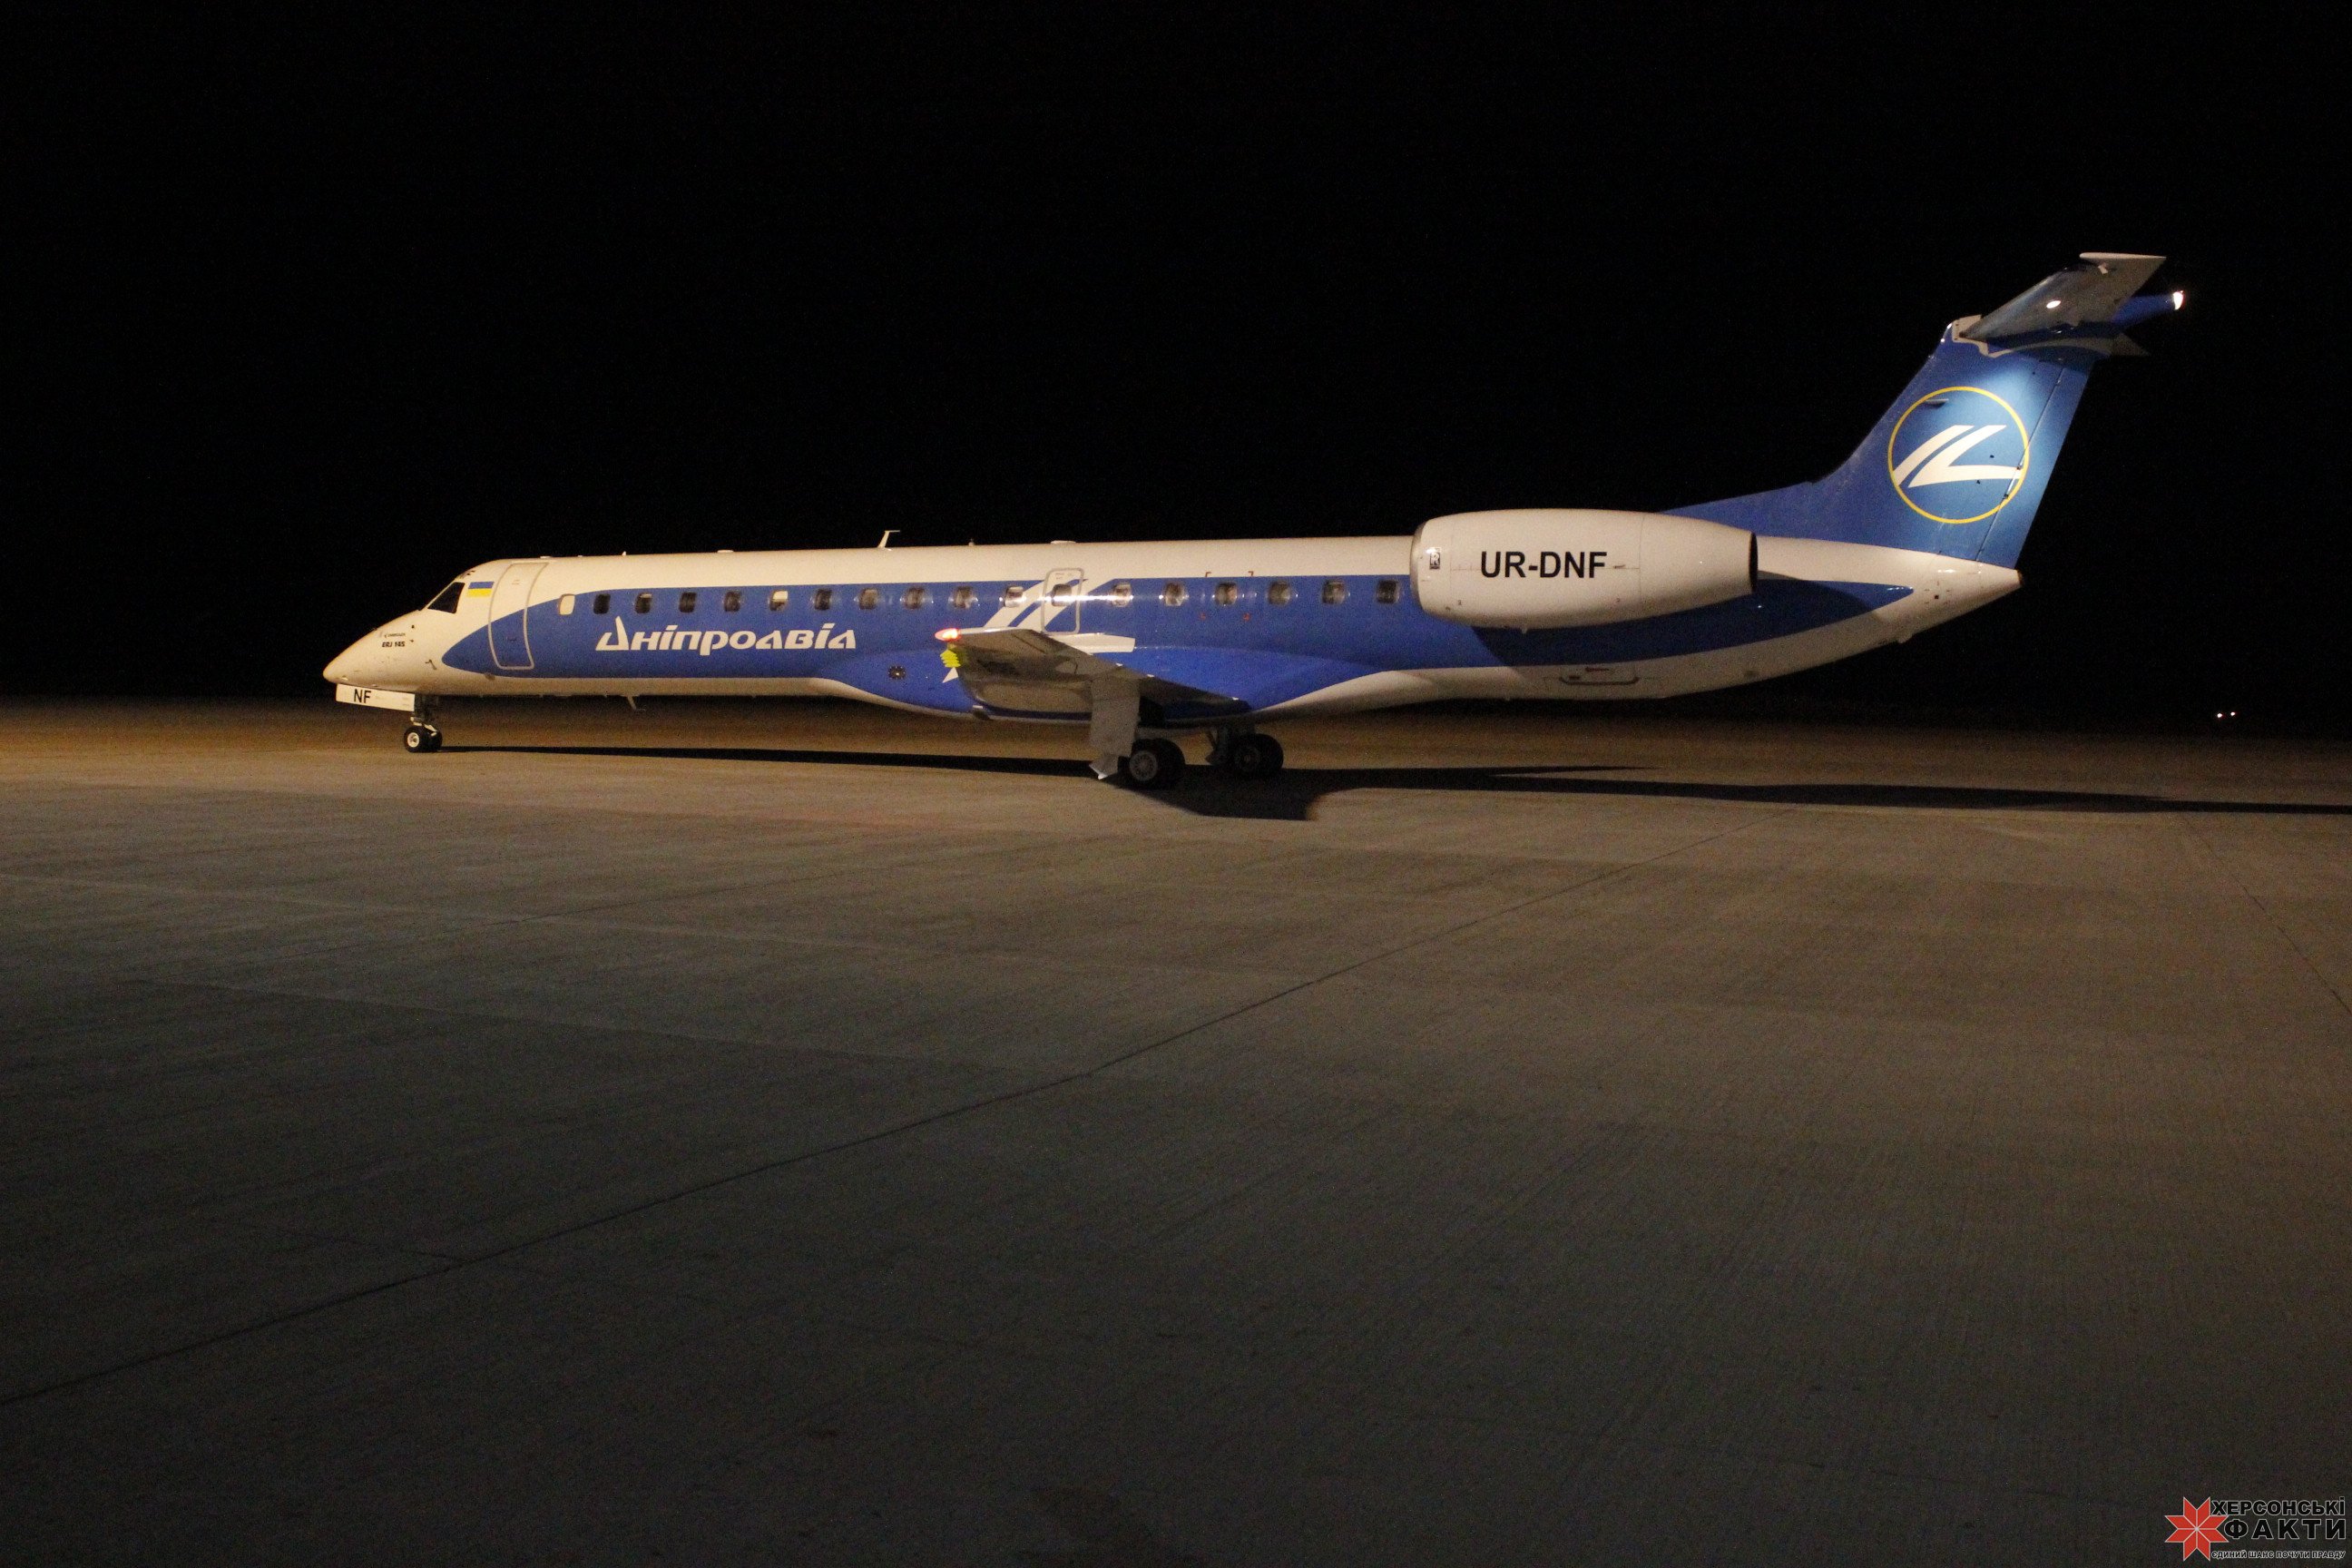 Авиарейс Киев - Херсон развернули на полпути назад в Борисполь - названа причина срочной отмены полета